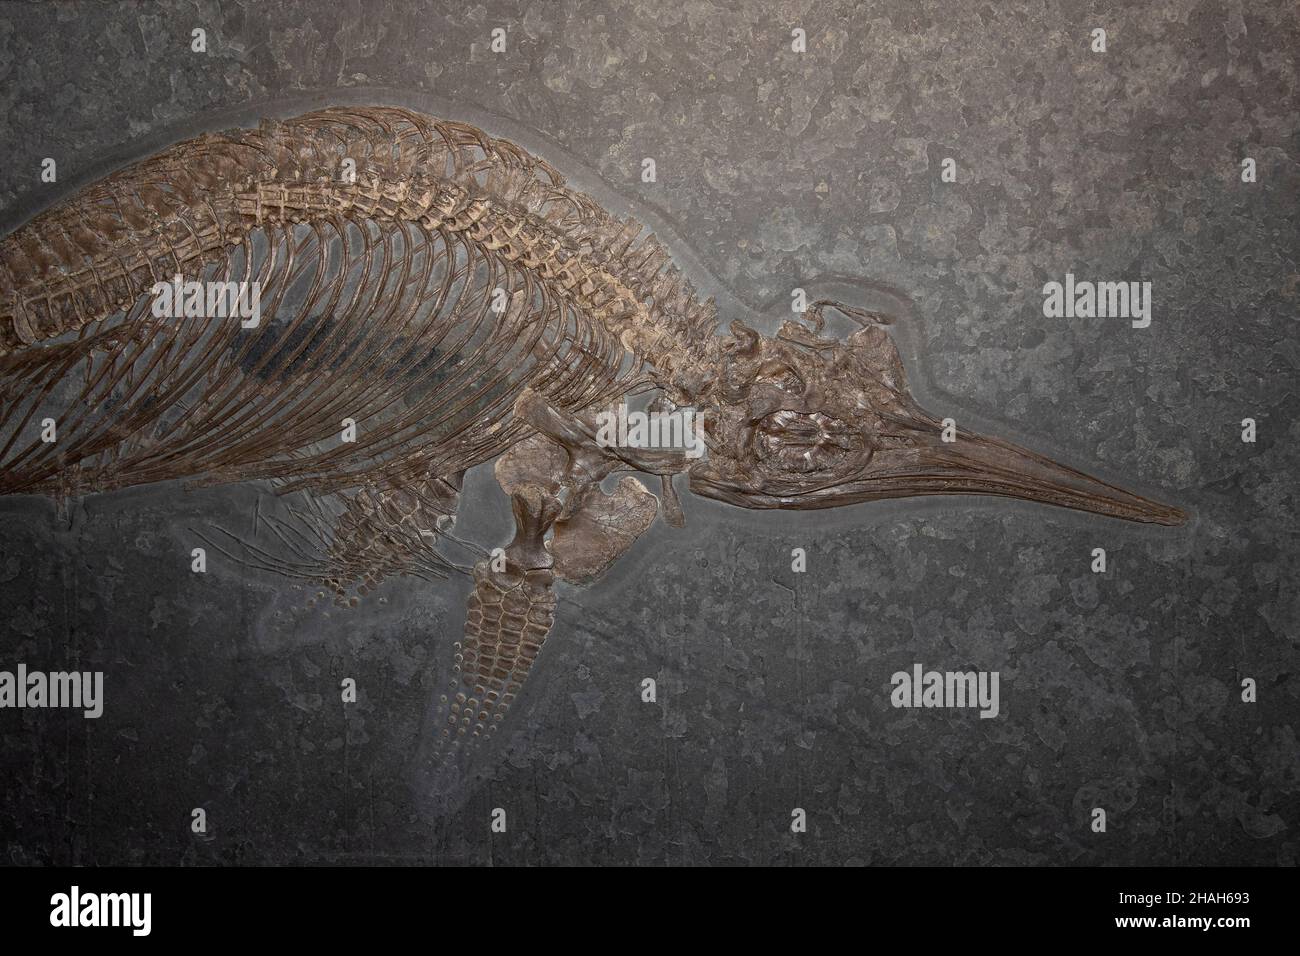 Un reptile marin fossile Stenopterygius est un parent d'ichthyosaures Banque D'Images